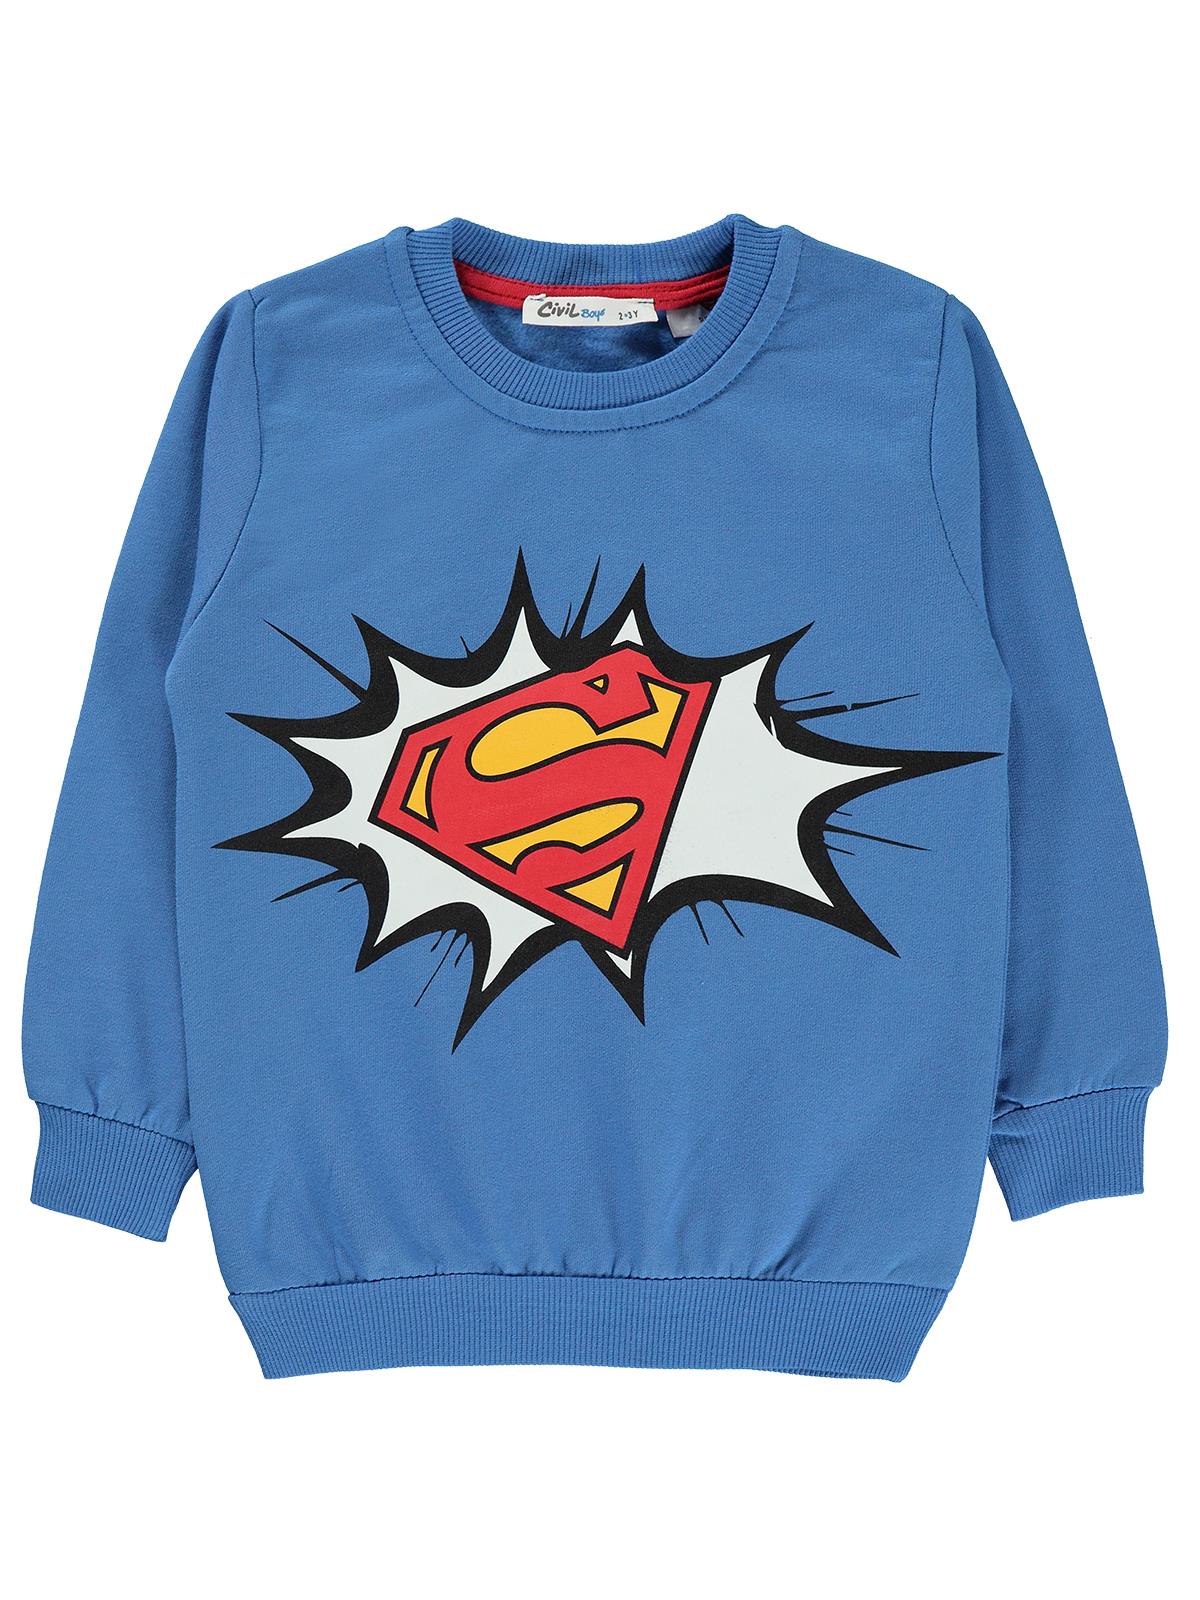 Süperman Erkek Çocuk Sweatshirt 2-5 Yaş Saks Mavisi